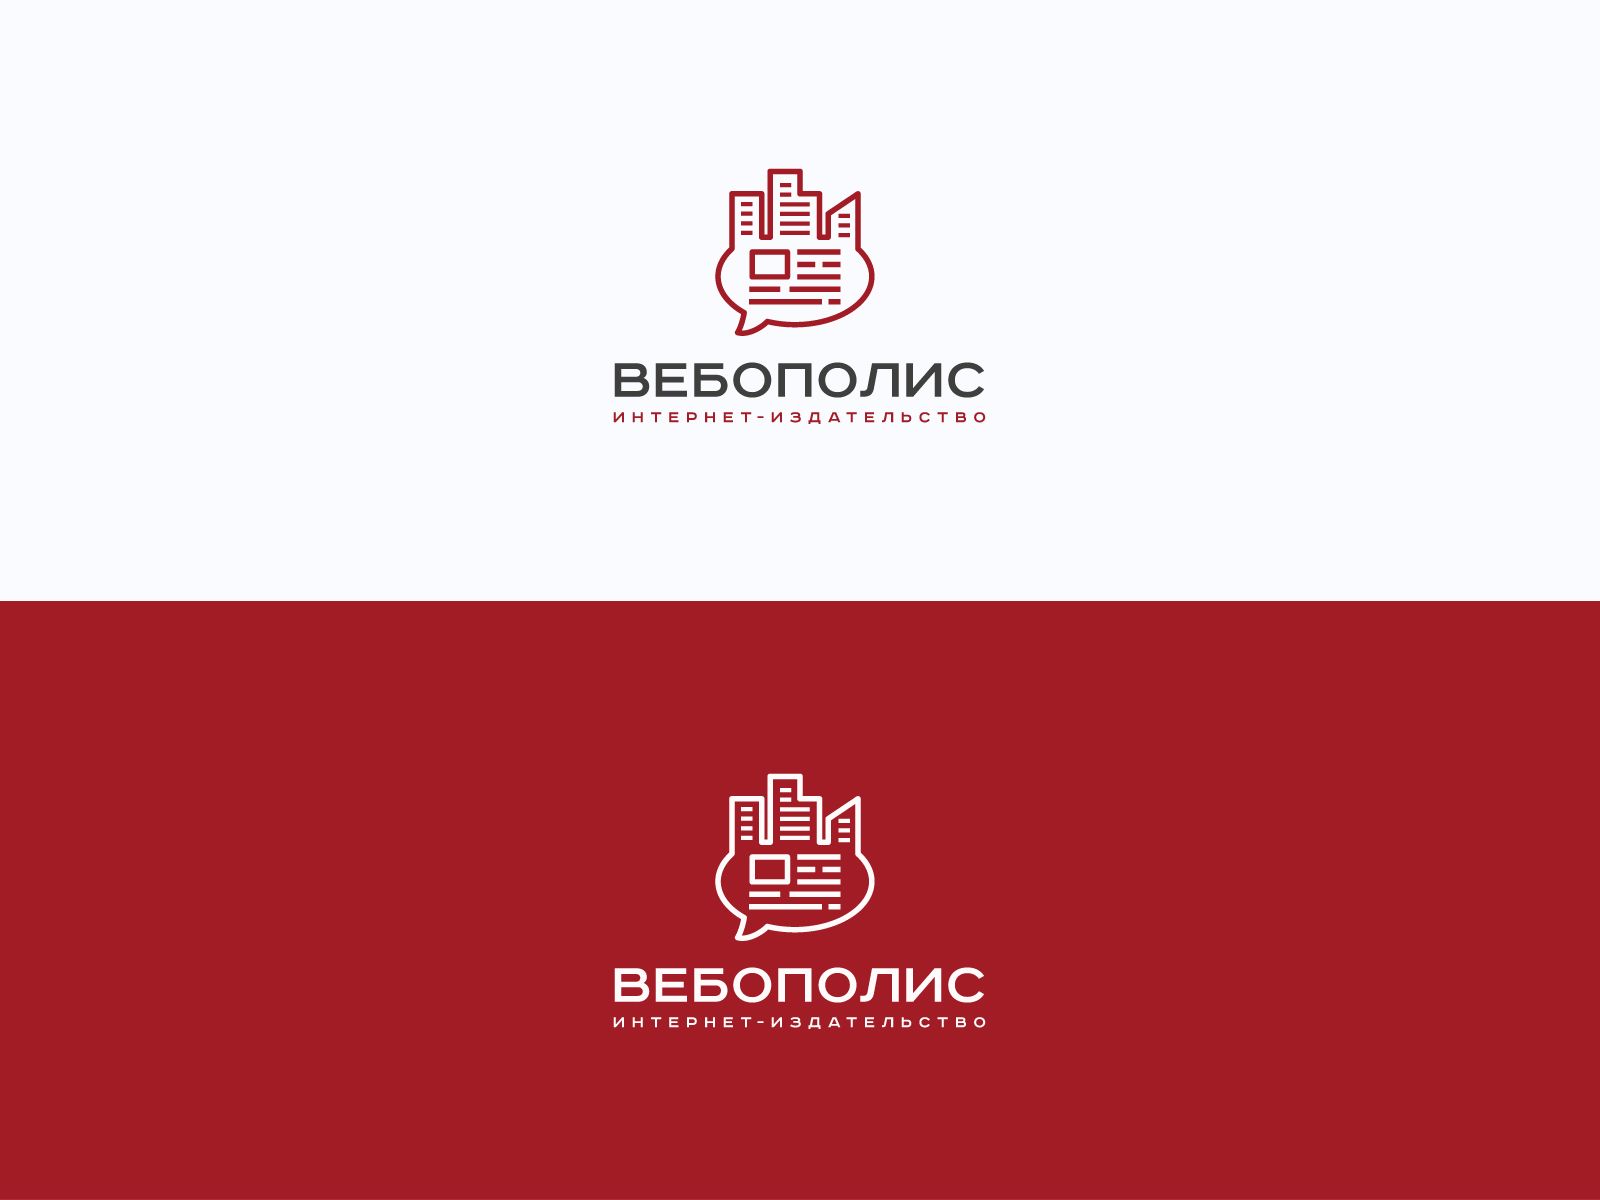 Лого и фирменный стиль для Вебополис - дизайнер U4po4mak